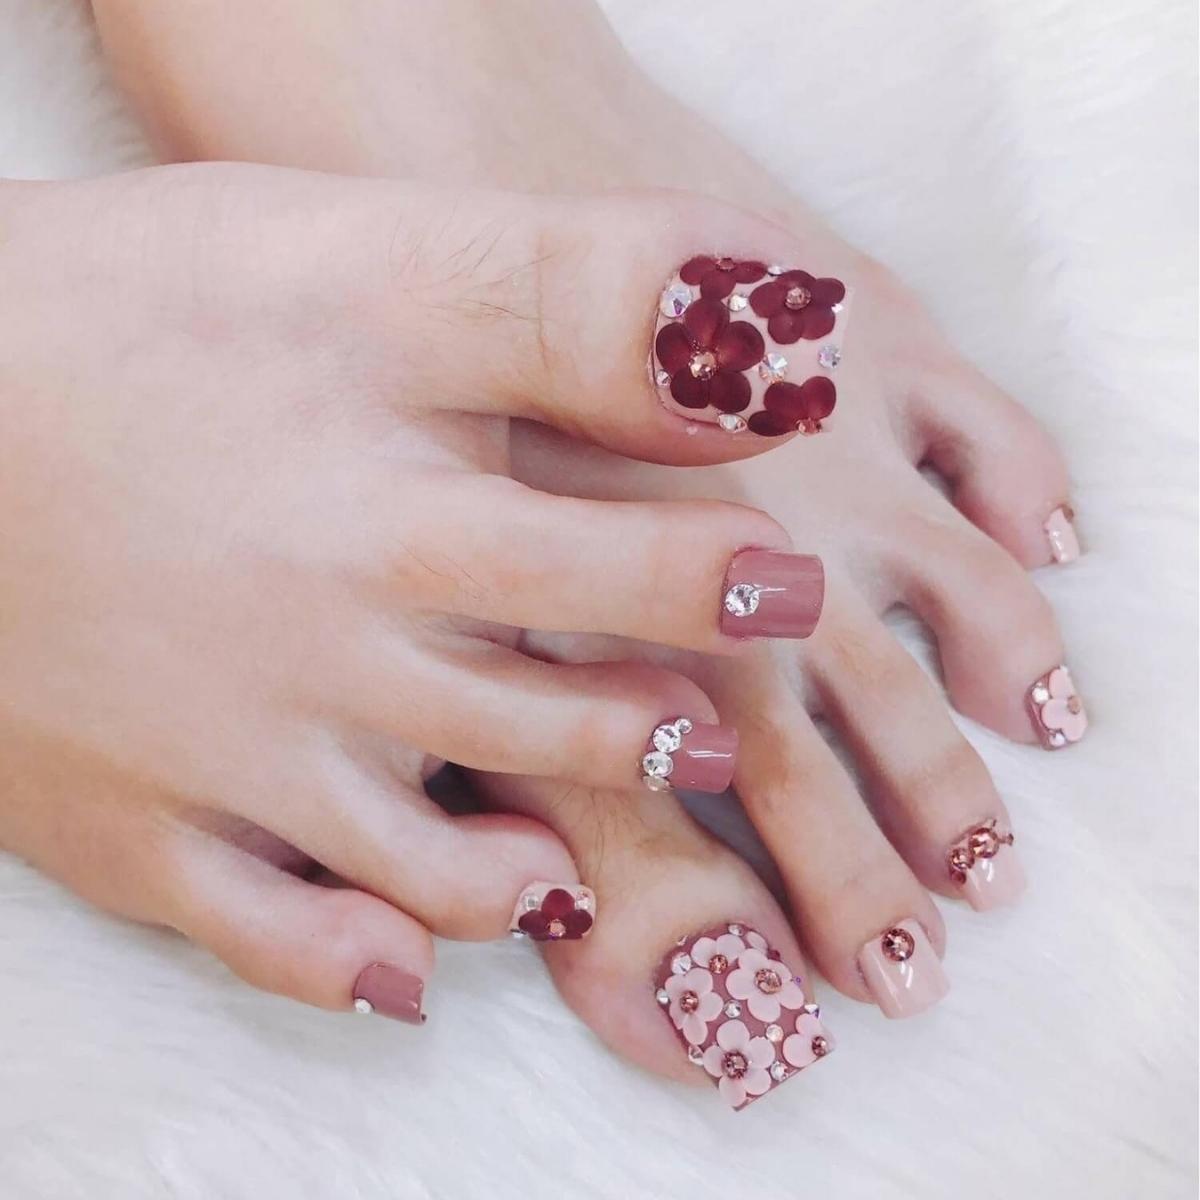 Nail chân màu sắc hồng nhạt nhẽo đính kèm đá hình hoa dễ thương 